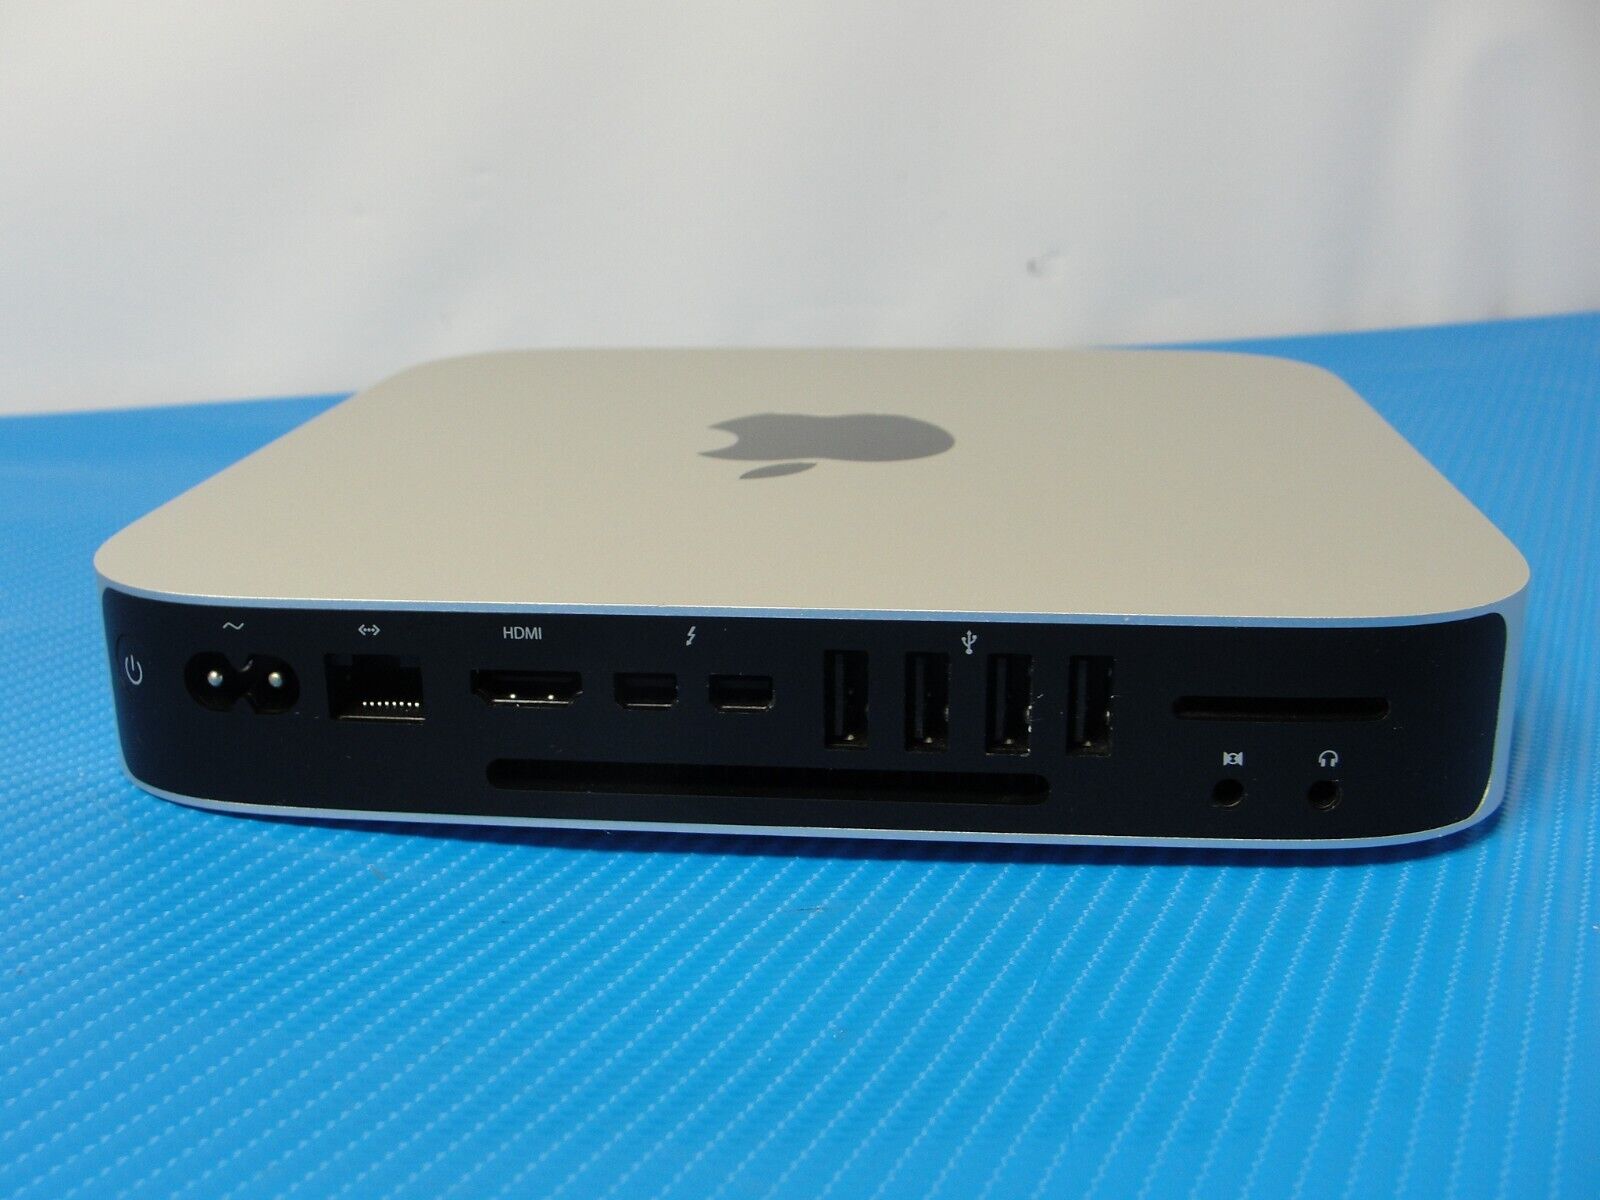 Mac mini i5 8GB 500GB SSD crucial 2014 | www.piazzagrande.it